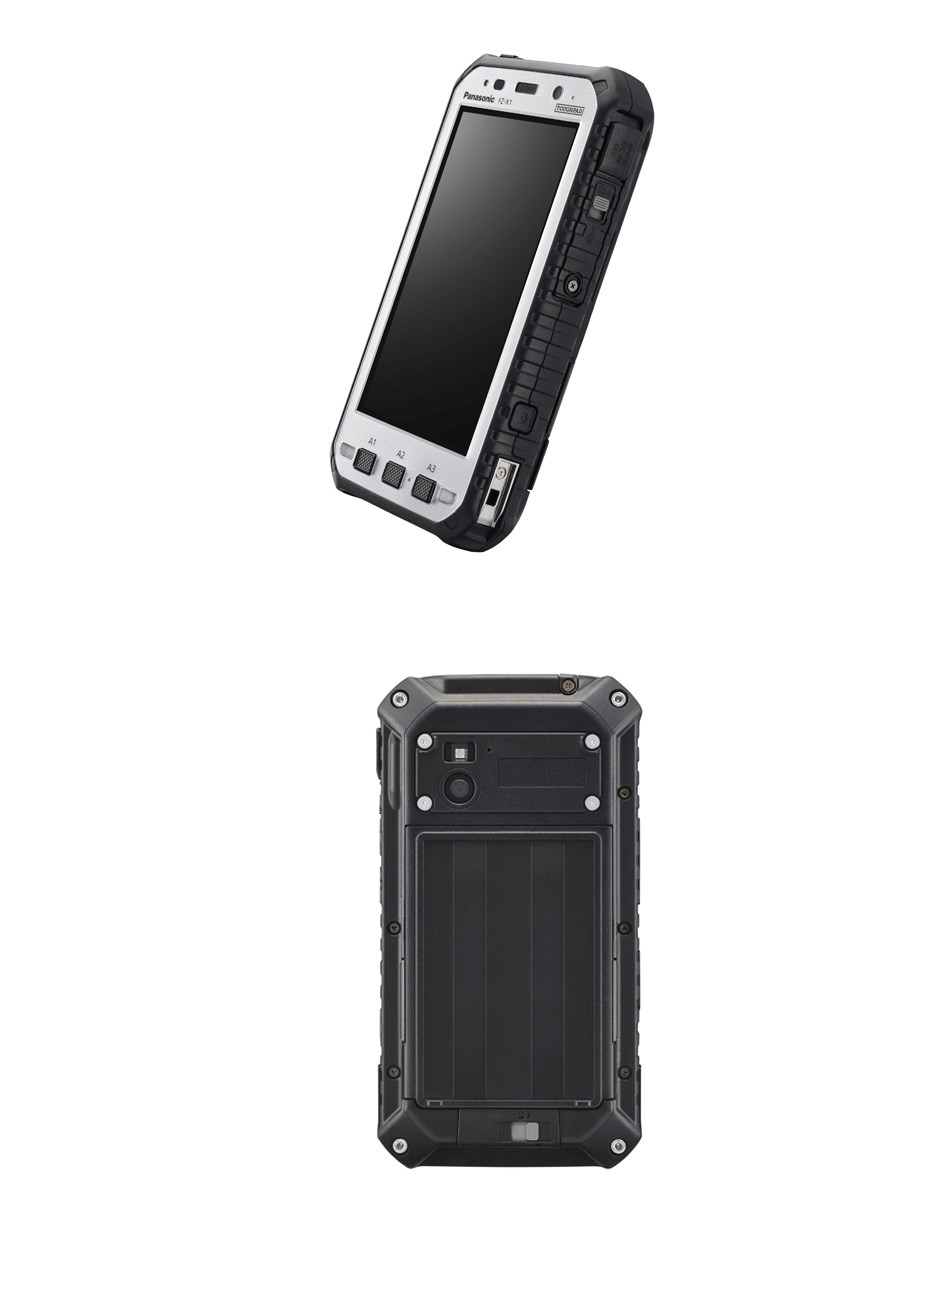 FZ-N1全坚固型三防手持平板手机安卓可定制 三防手机,全坚固型,可定制,FZ-N1,平板手机